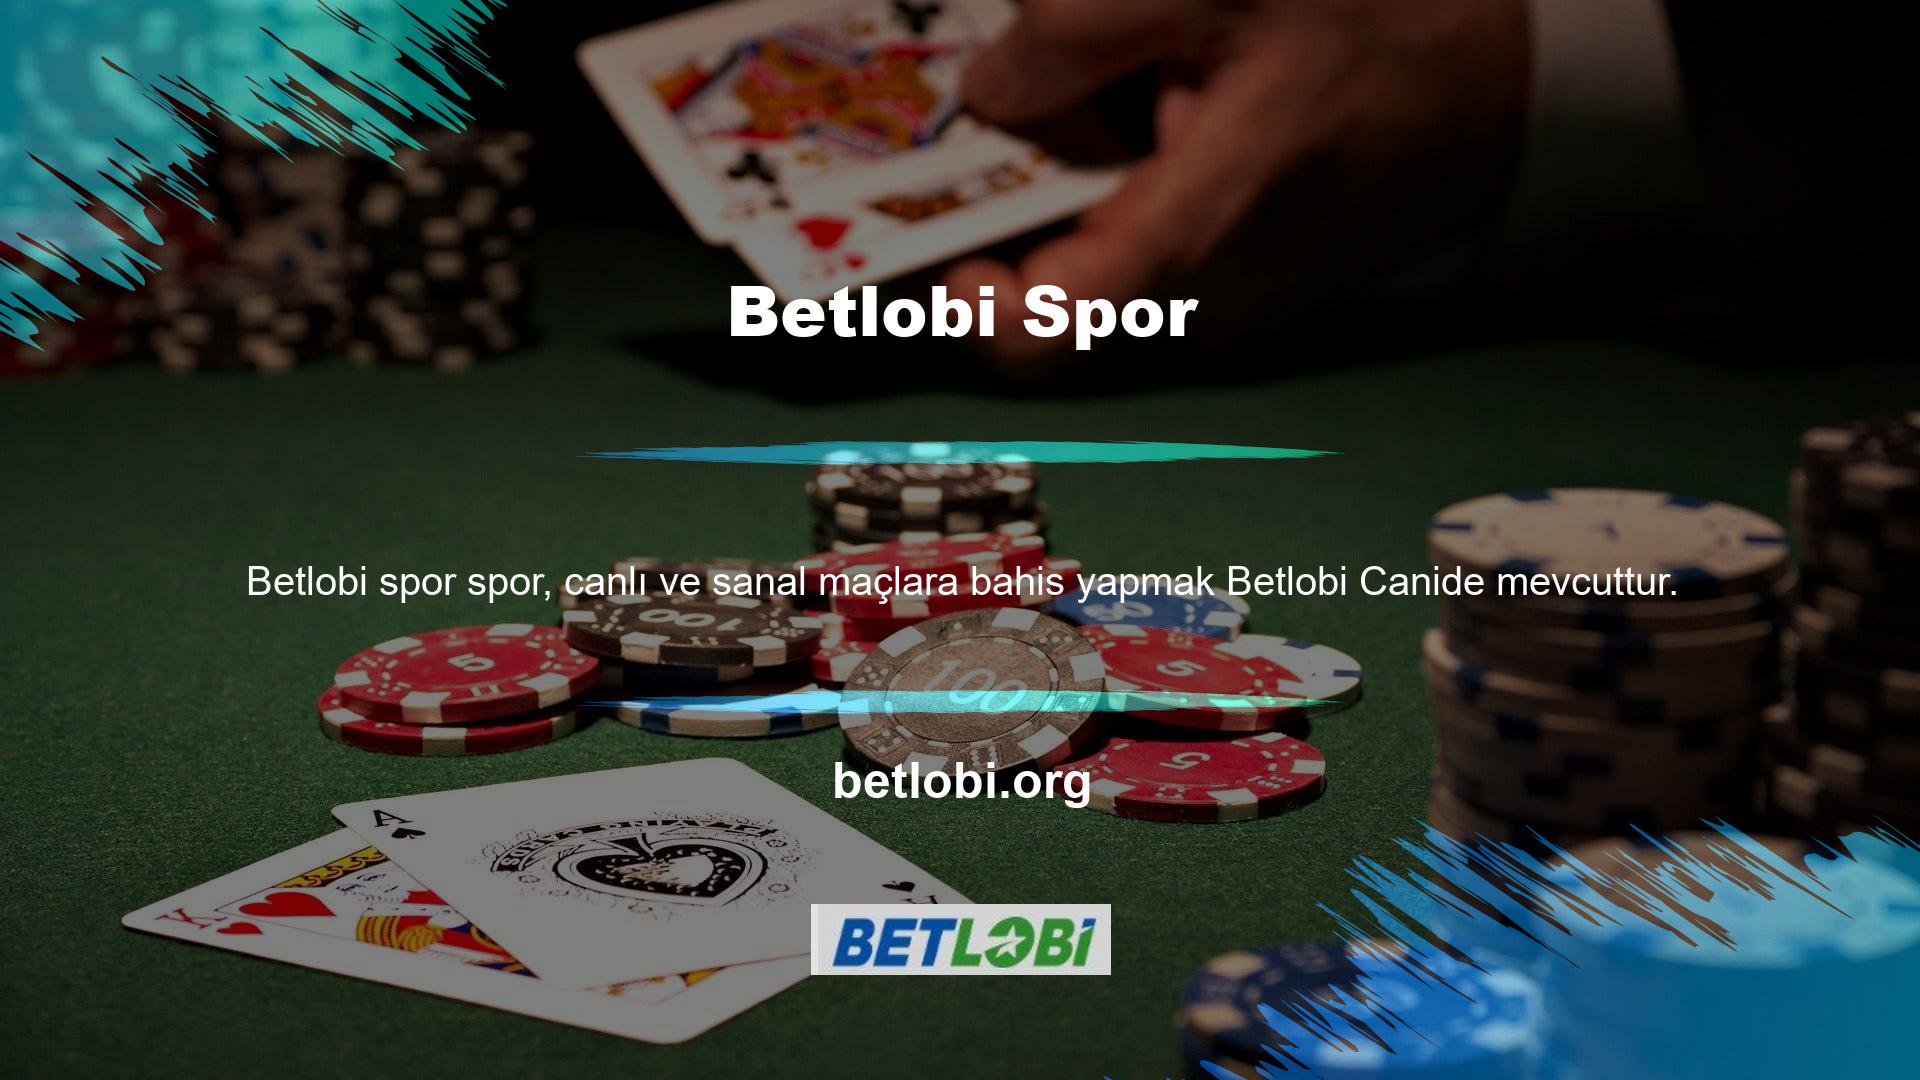 Çevrimiçi Casino, slot ve poker gibi çeşitli Casino etkinliklerinin keyfini çıkarabileceğiniz bir yer